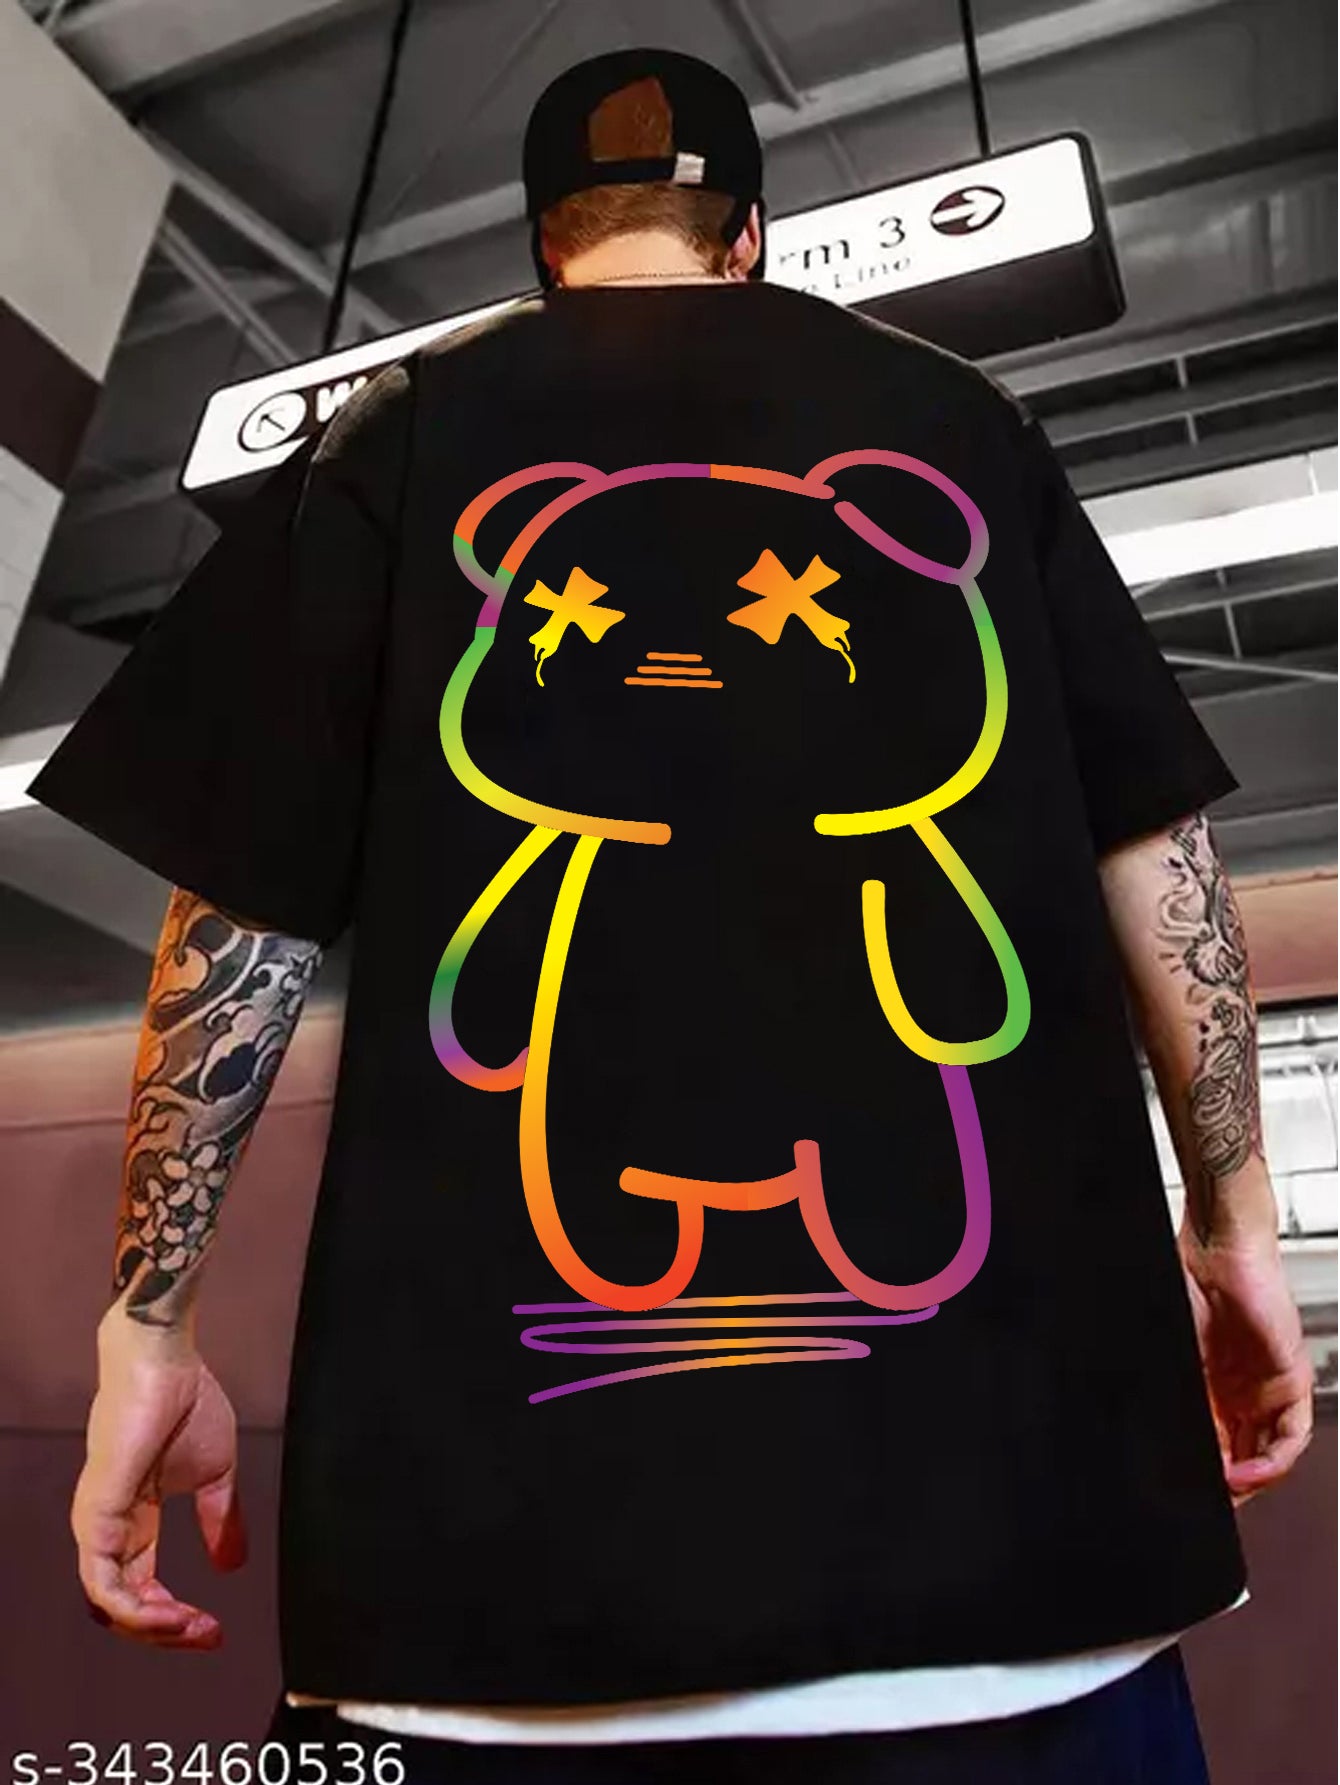 Teddy - Oversized Tshirt